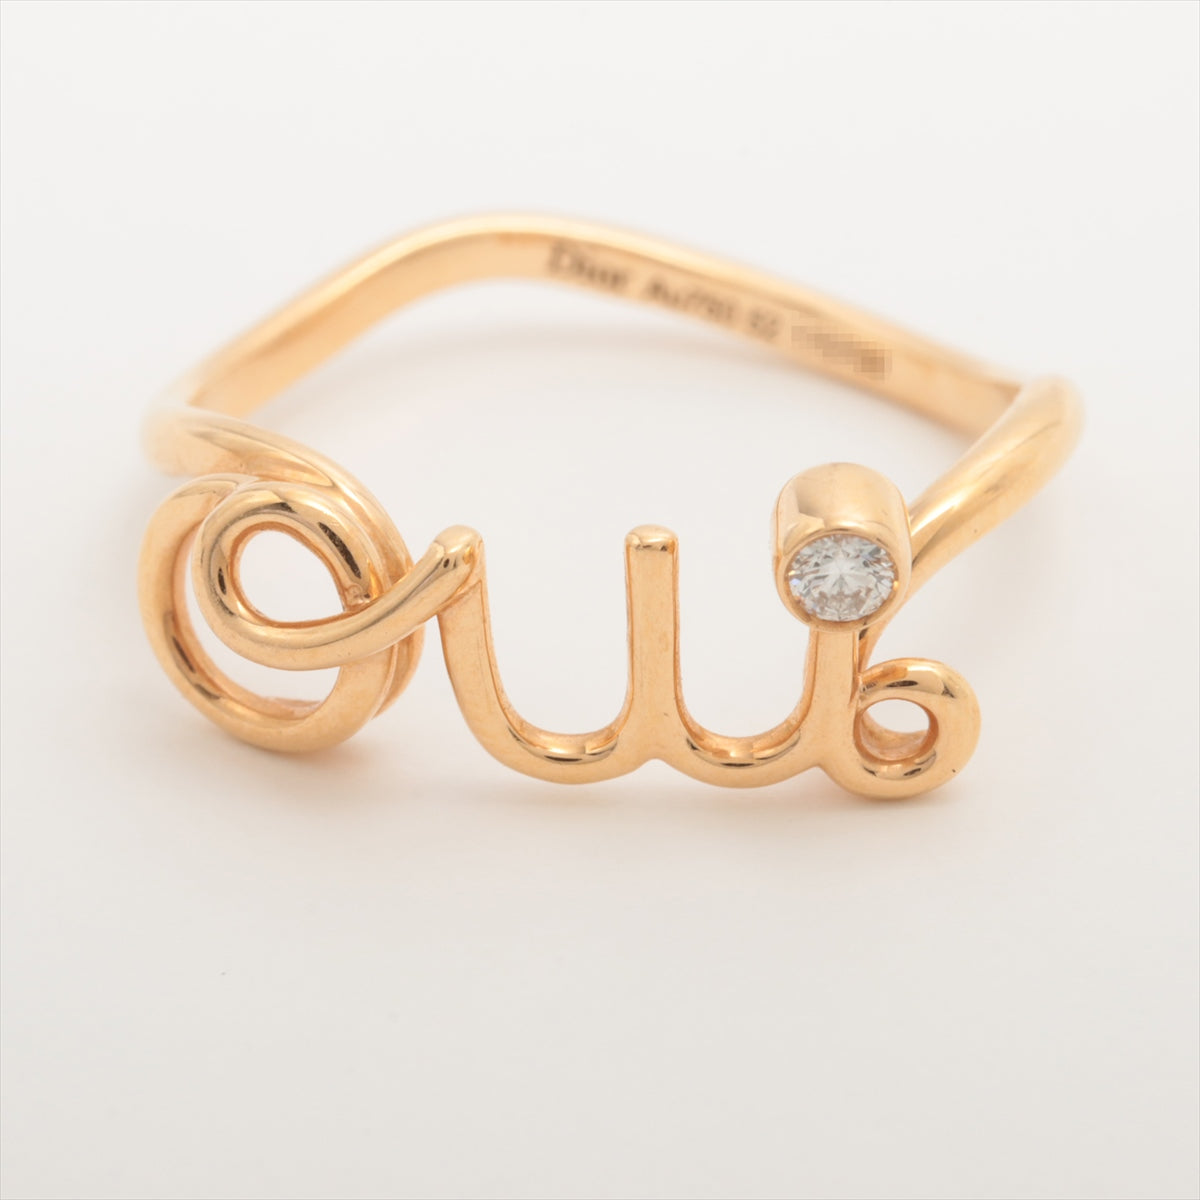 DIOR Oui diamond rings 750(PG) 1.9g 52 JOUI95033